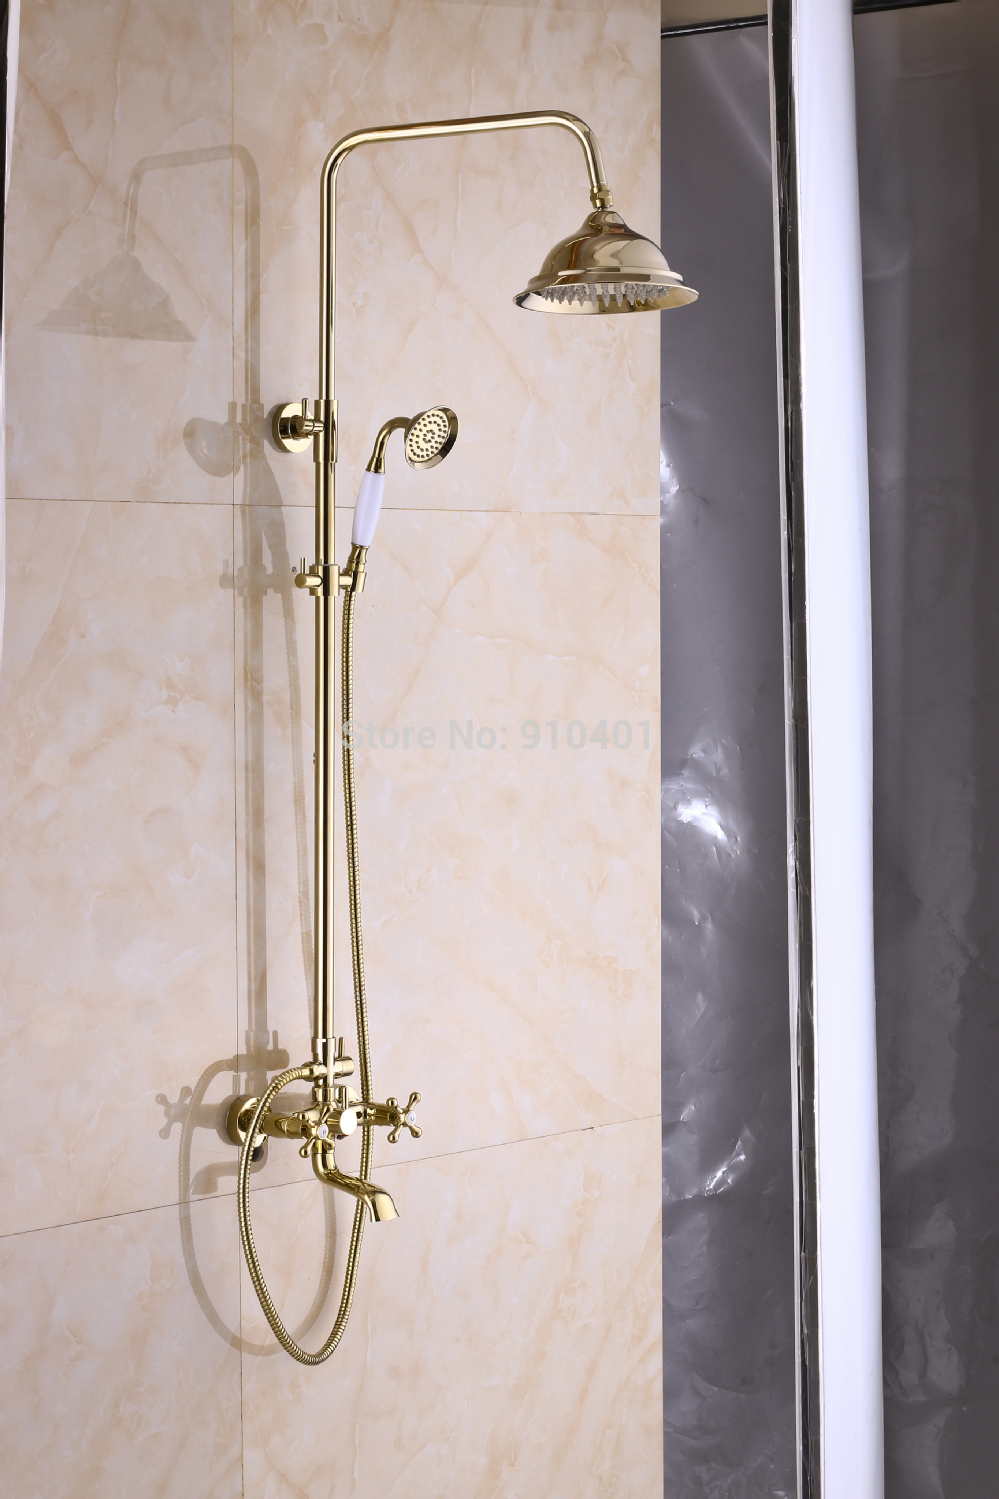 Wholesale And Retail Promotion Golden Brass Rain Shower Faucet Set Bathtub Mixer Tap Dual Handles Hand Shower